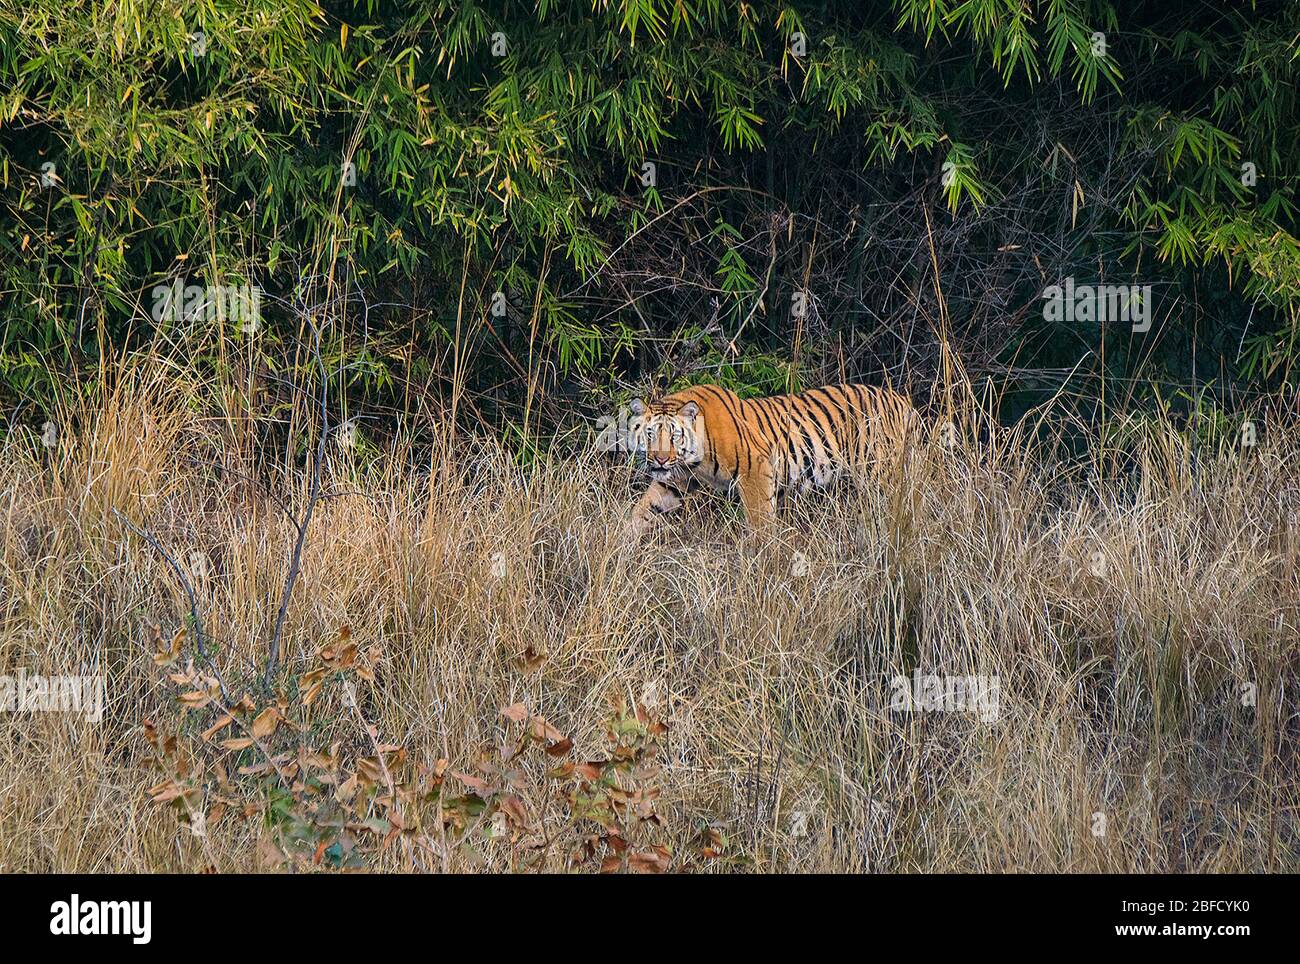 A Tiger cub posing at Bandhavgarh National Park, Madhya Pradesh, India Stock Photo